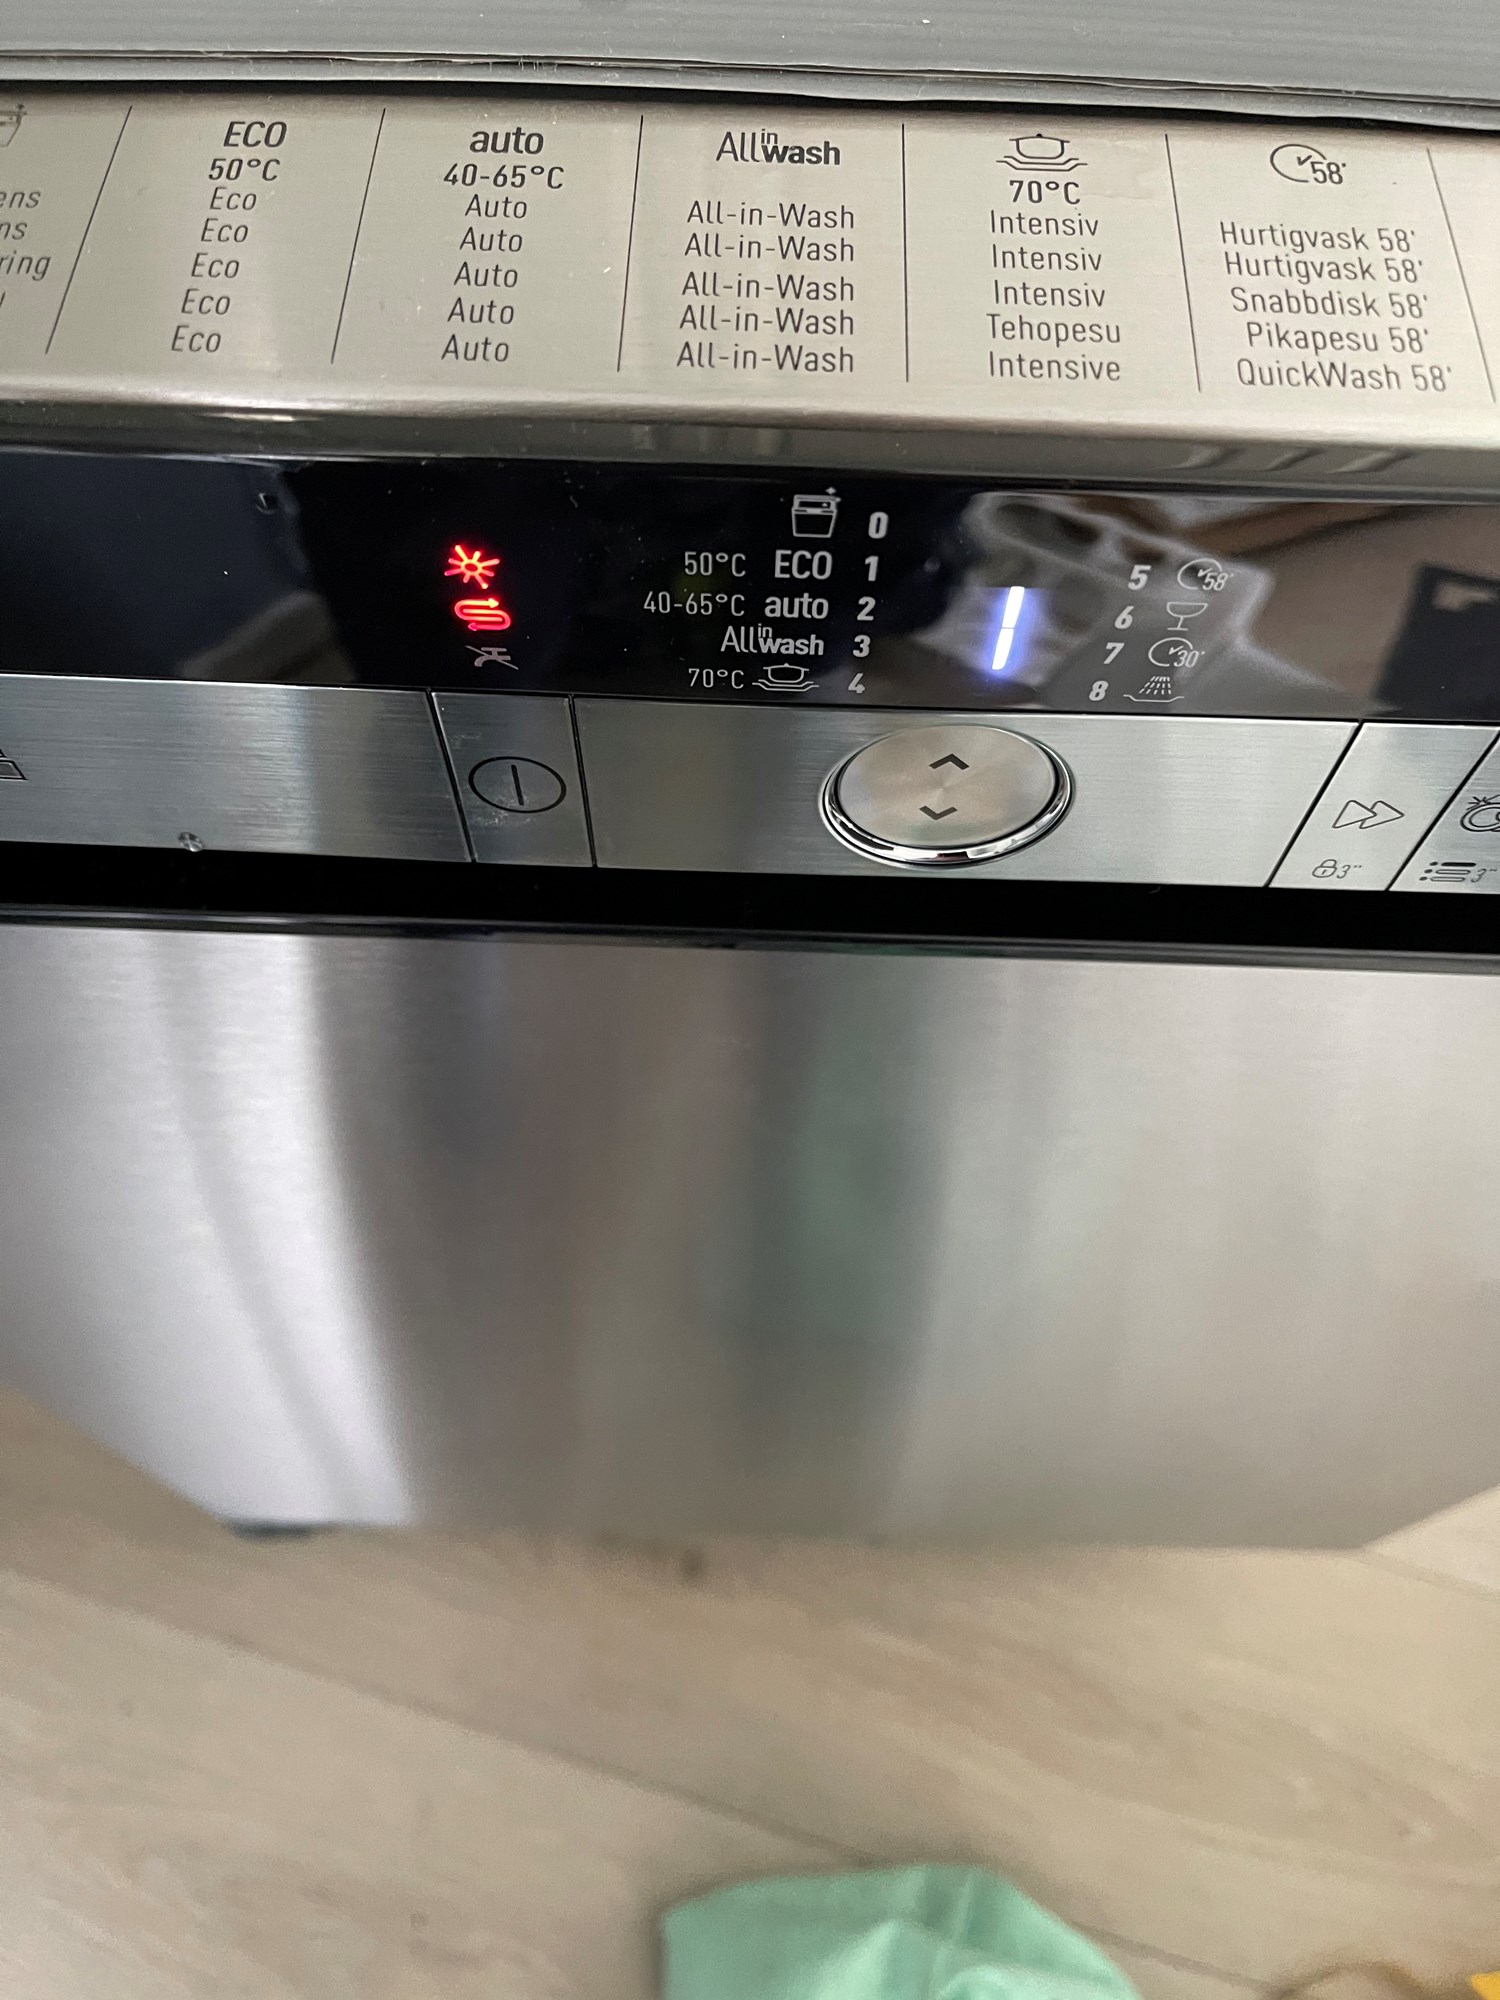 Ny oppvaskmaskin tar ikke inn vann - 4DE311D3-4BC9-4DF0-863A-96BB75541D3A.jpeg - hjelp1234